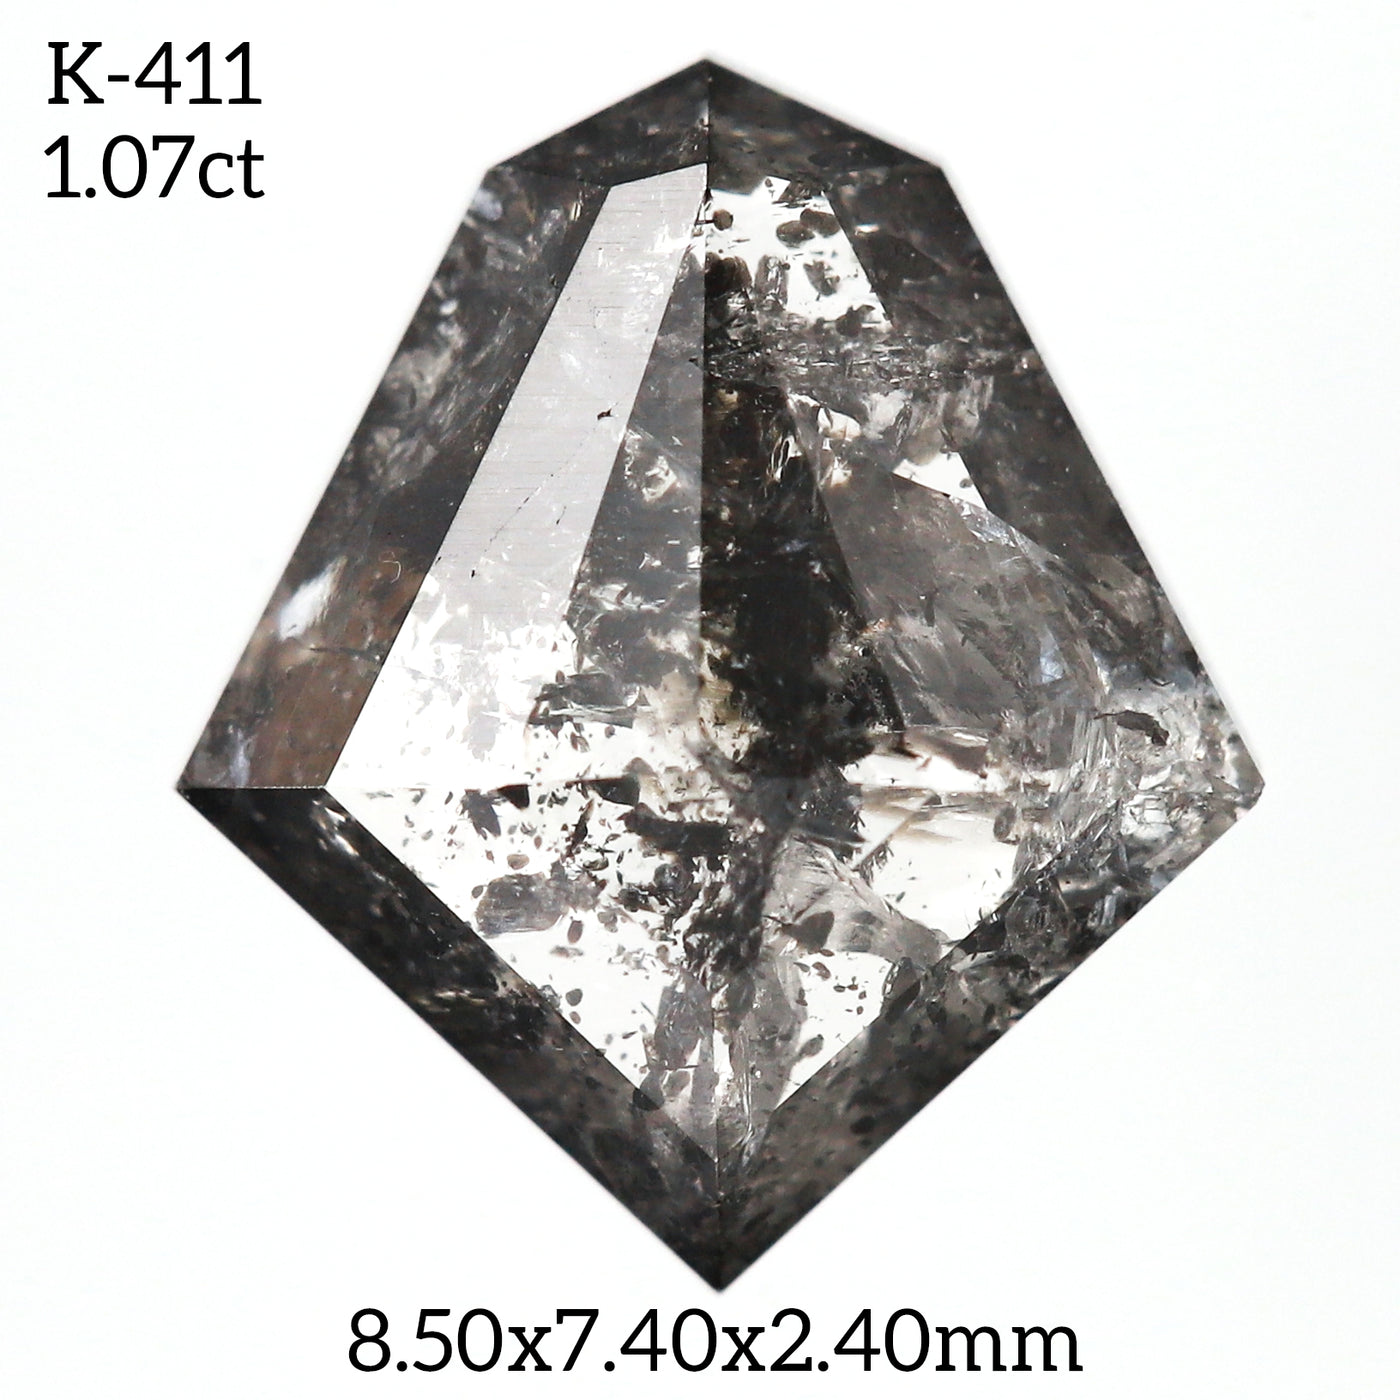 K411 - Salt and pepper kite diamond